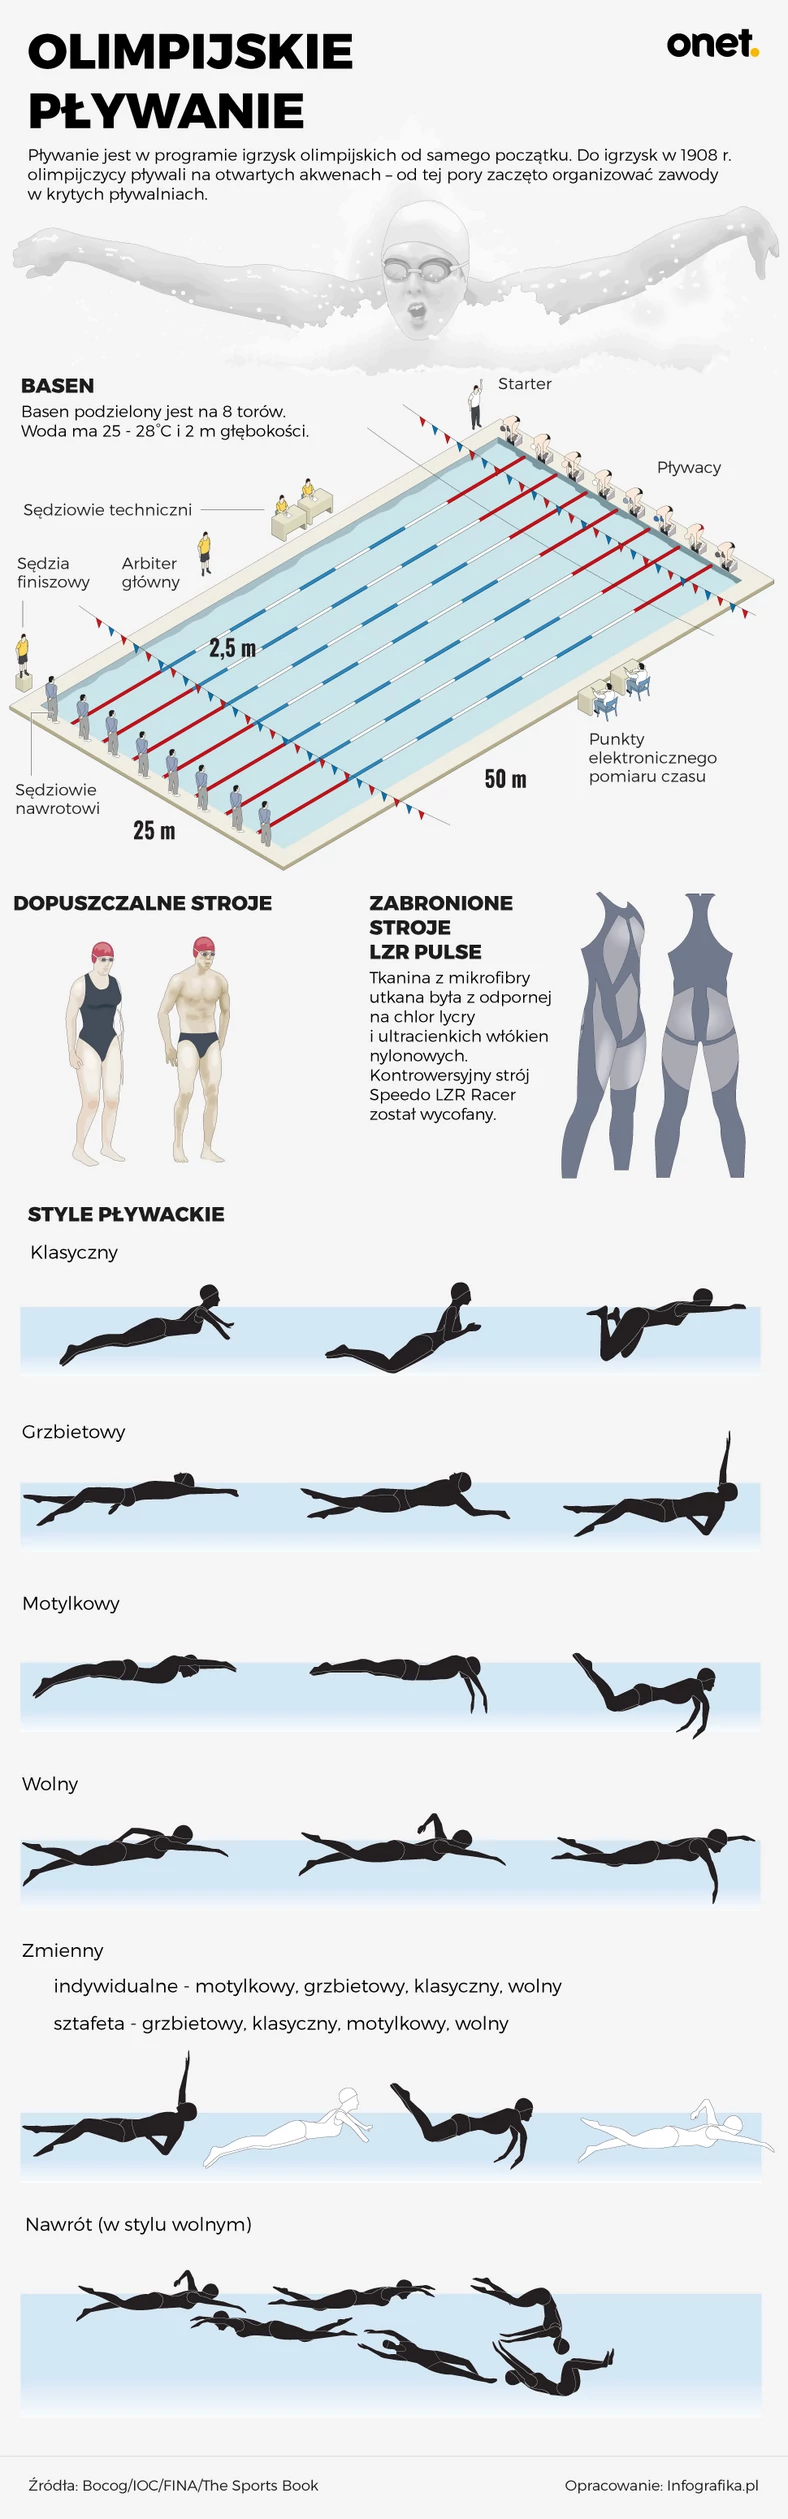 Olimpijskie pływanie - infografika